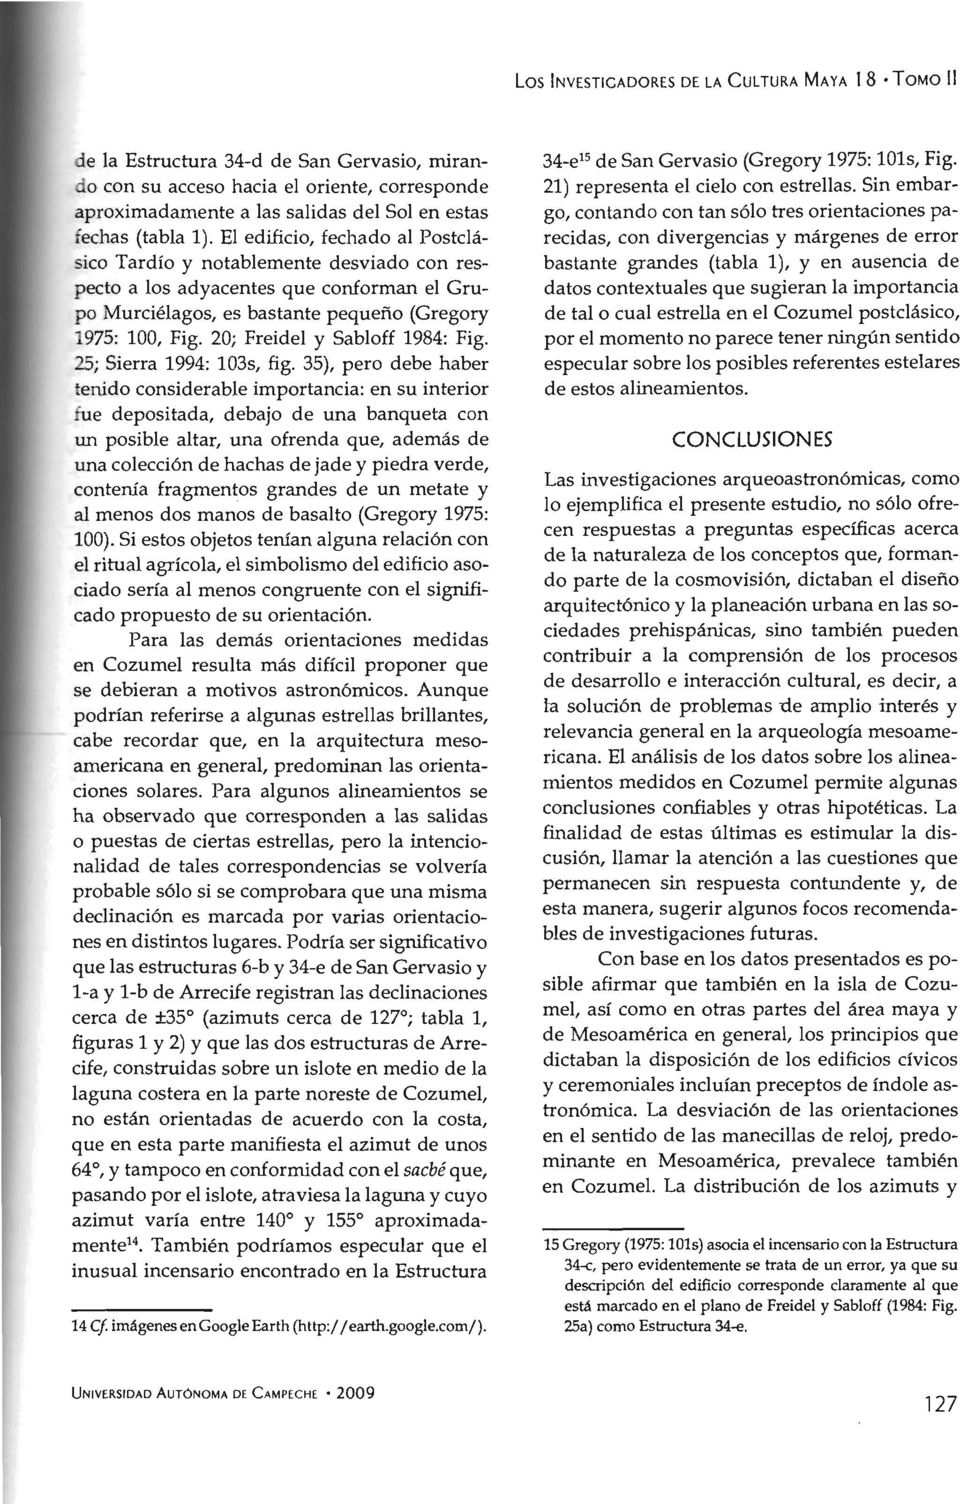 20; Freidel y Sabloff 1984: Fig. 25; Sierra 1994: 103s, fig.